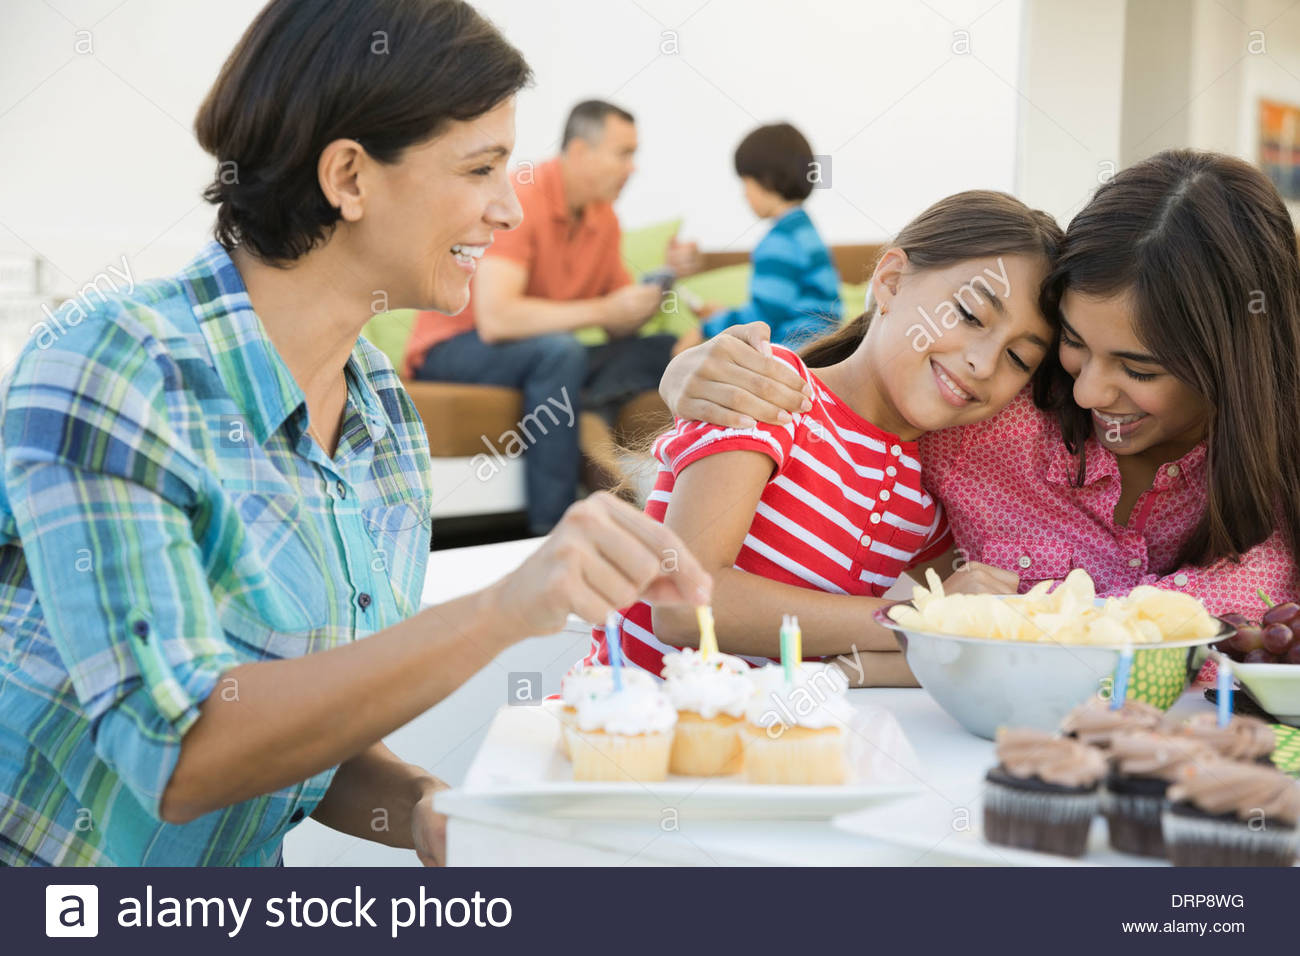 Family celebrating girls birthday Stock Photo